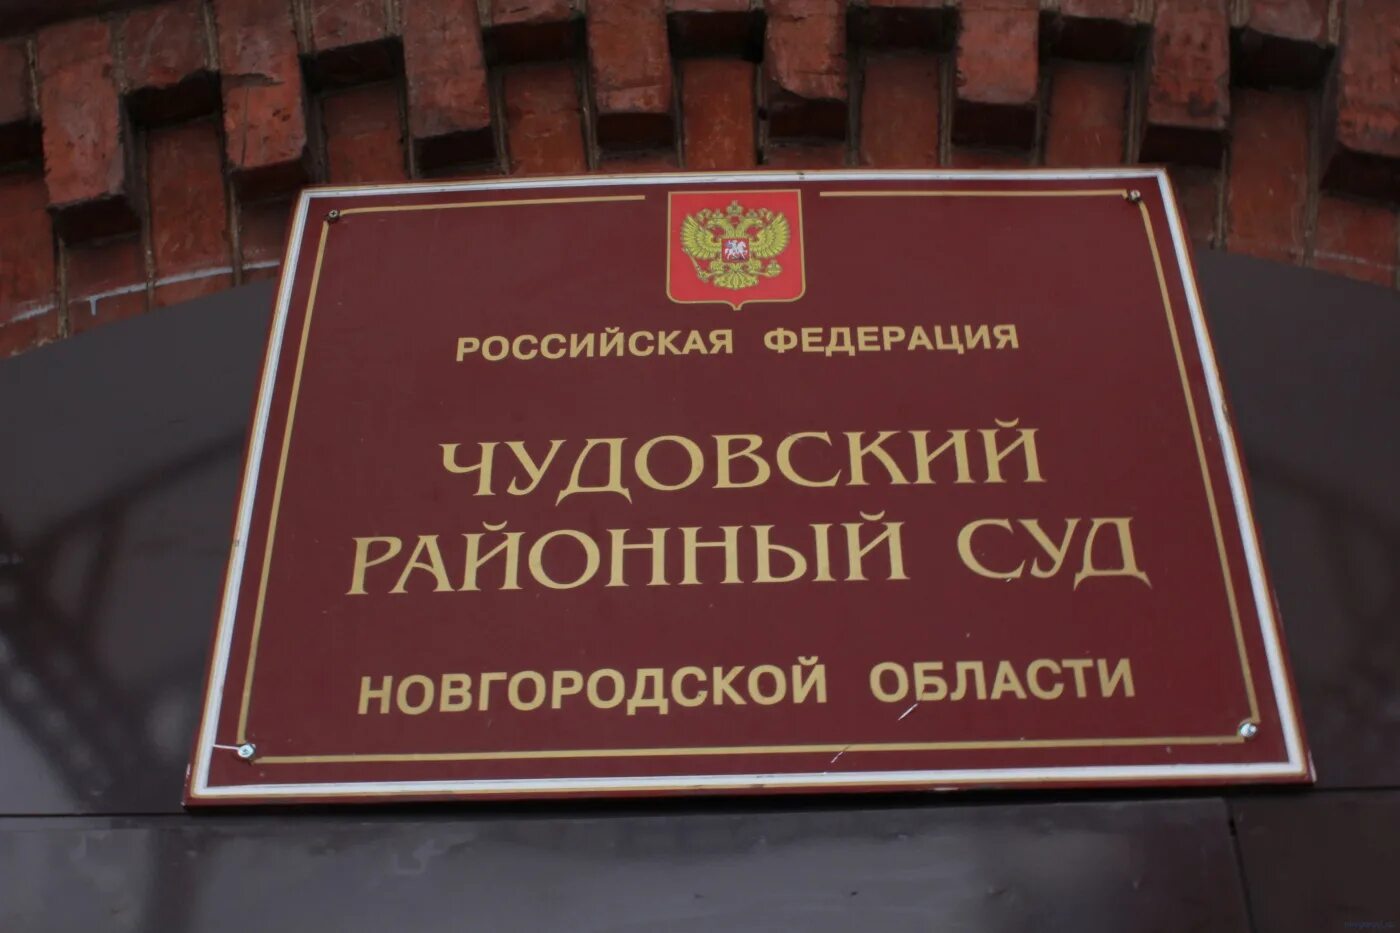 Чудовский районный суд новгородской